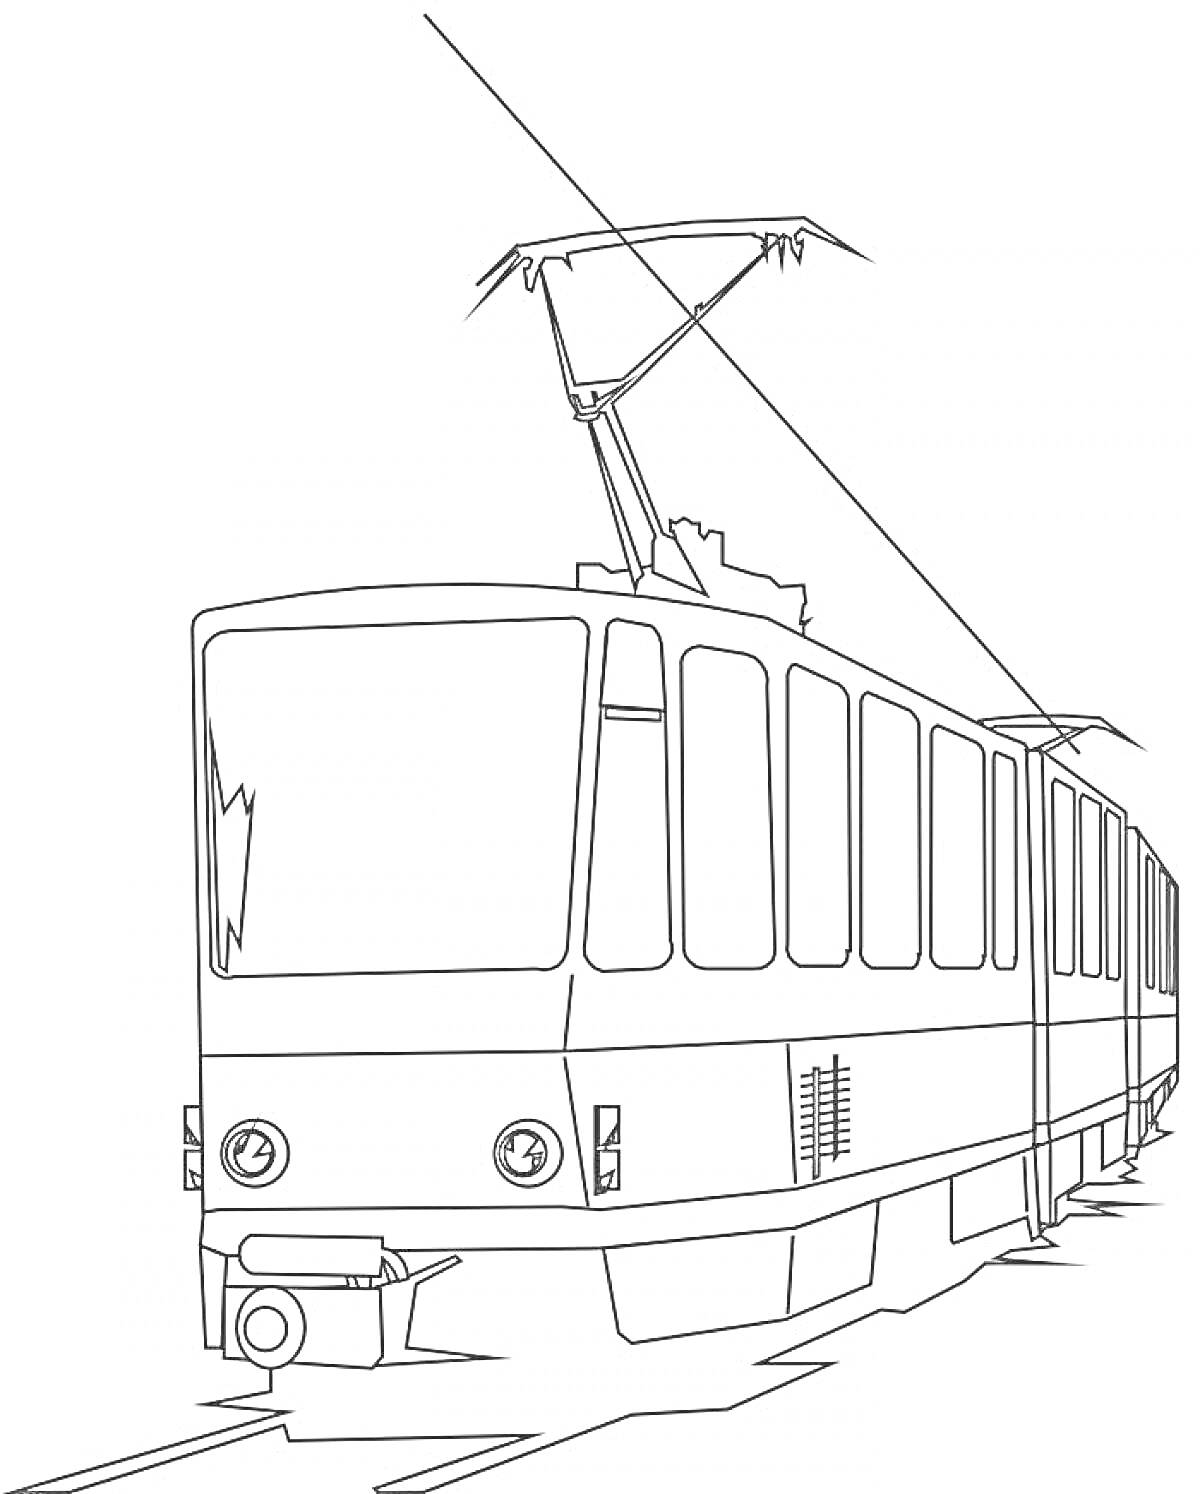 Раскраска Трамвай на рельсах с контактной сетью и панорамными окнами